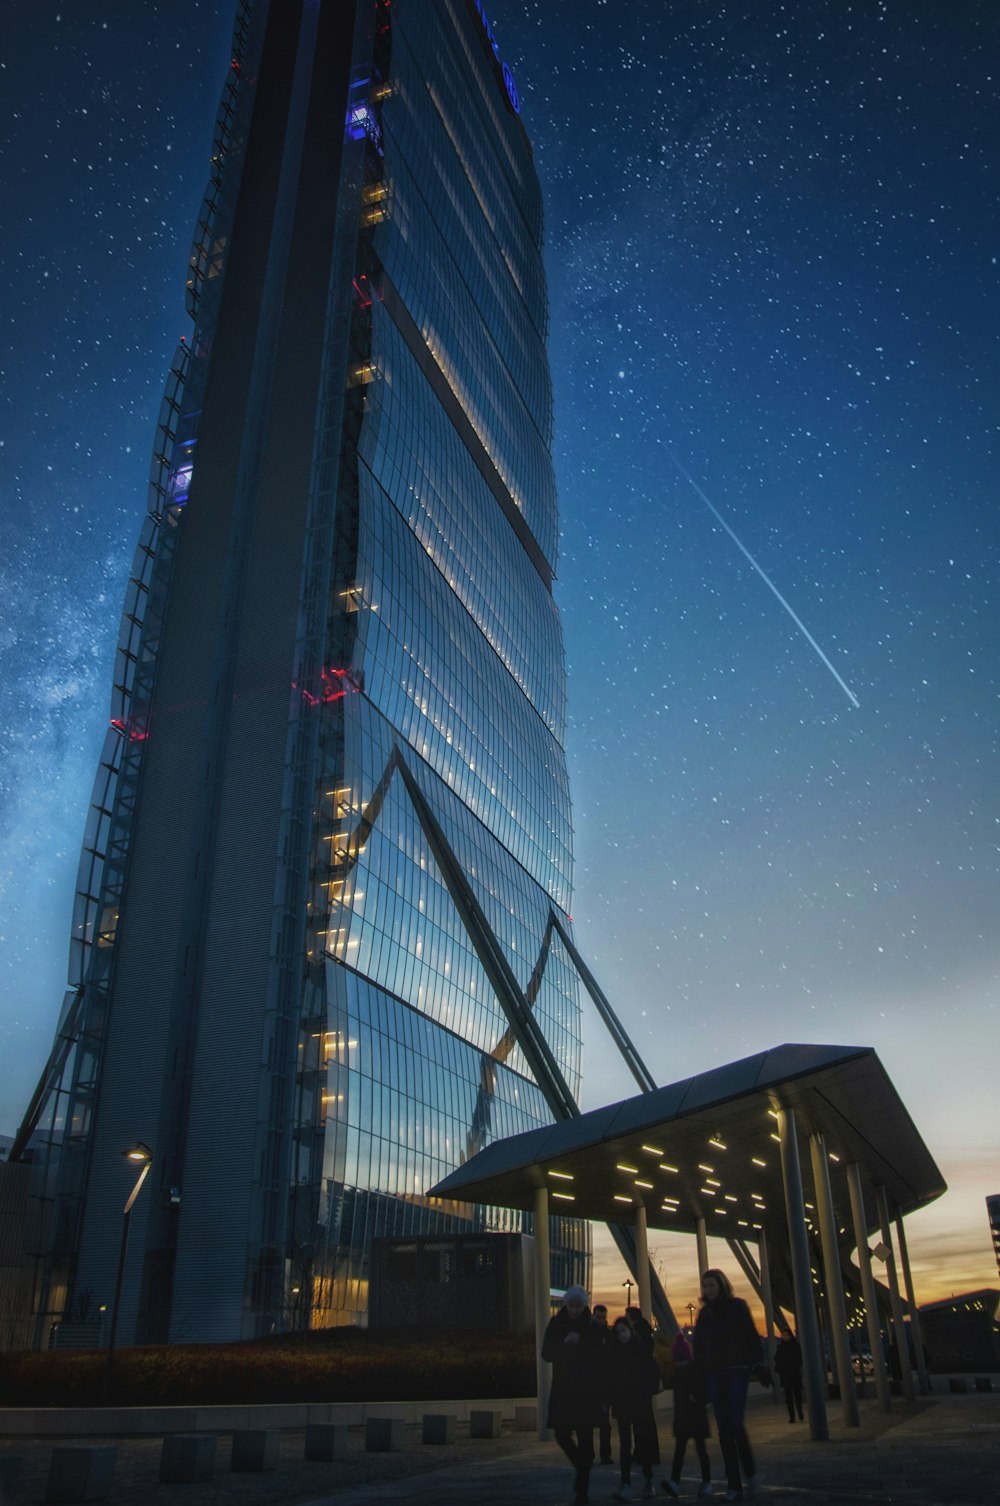 별이 빛나는 하늘 아래 커튼 월 고층 건물 근처를 걷는 사람들